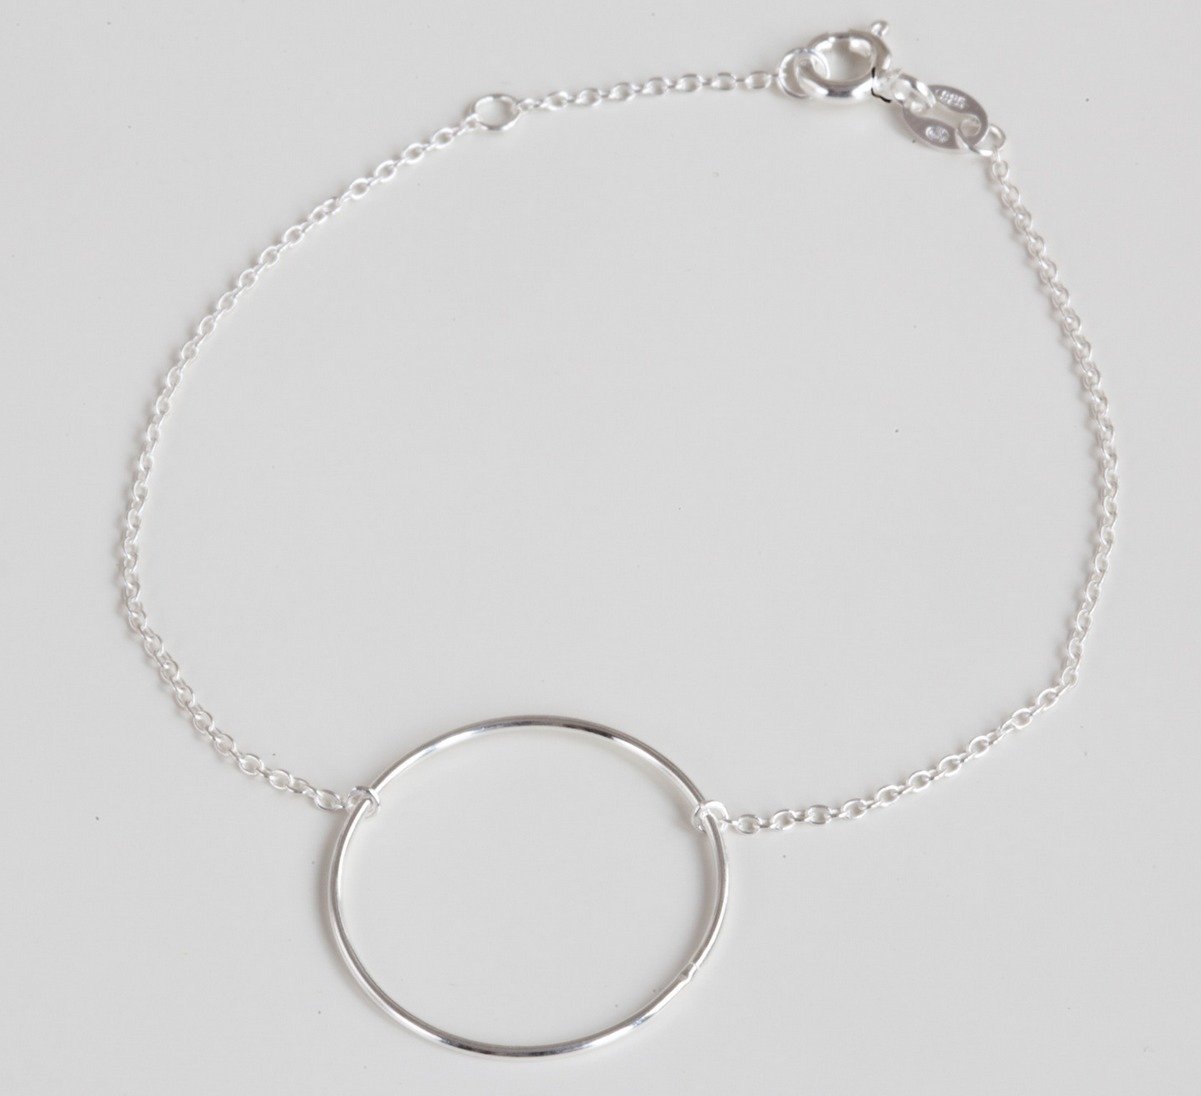 Armband mit eingearbeitetem Ring aus Silber